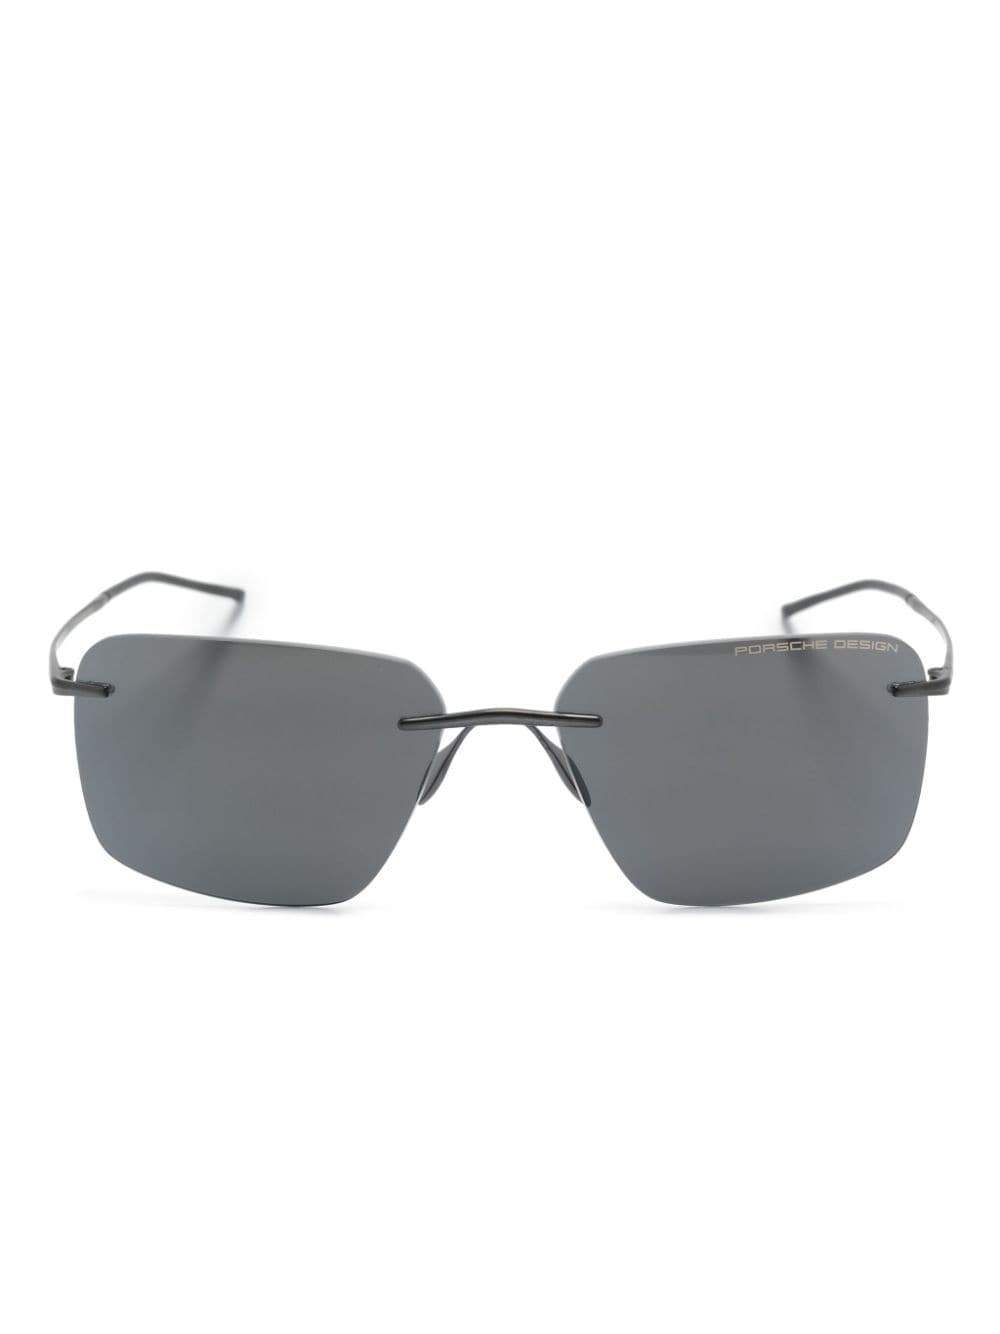 P8923 square-frame sunglasses